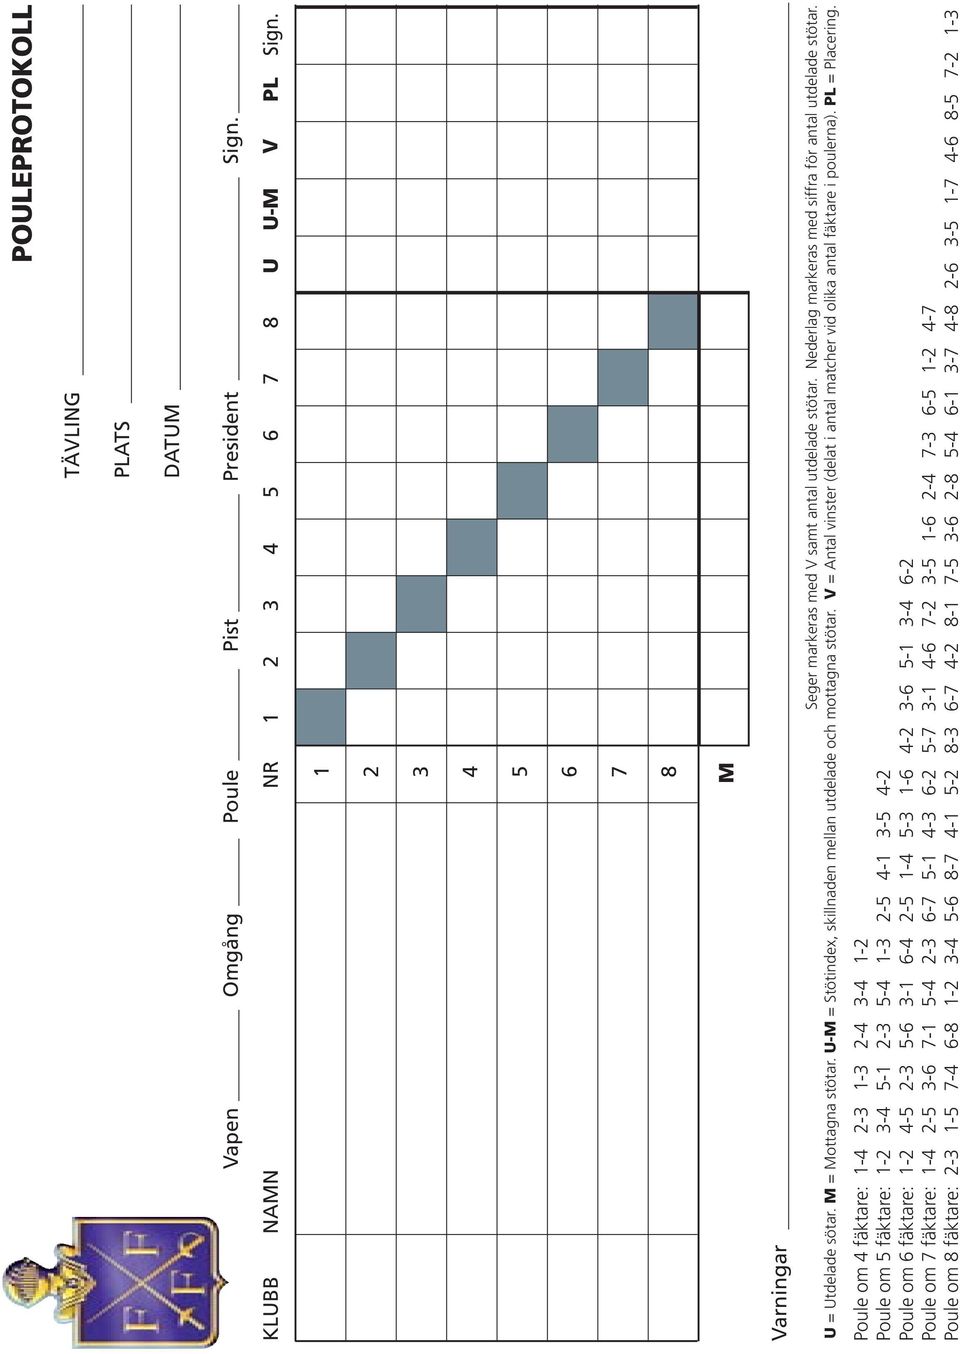 V = Antal vinster (delat i antal matcher vid olika antal fäktare i poulerna). PL = Placering.